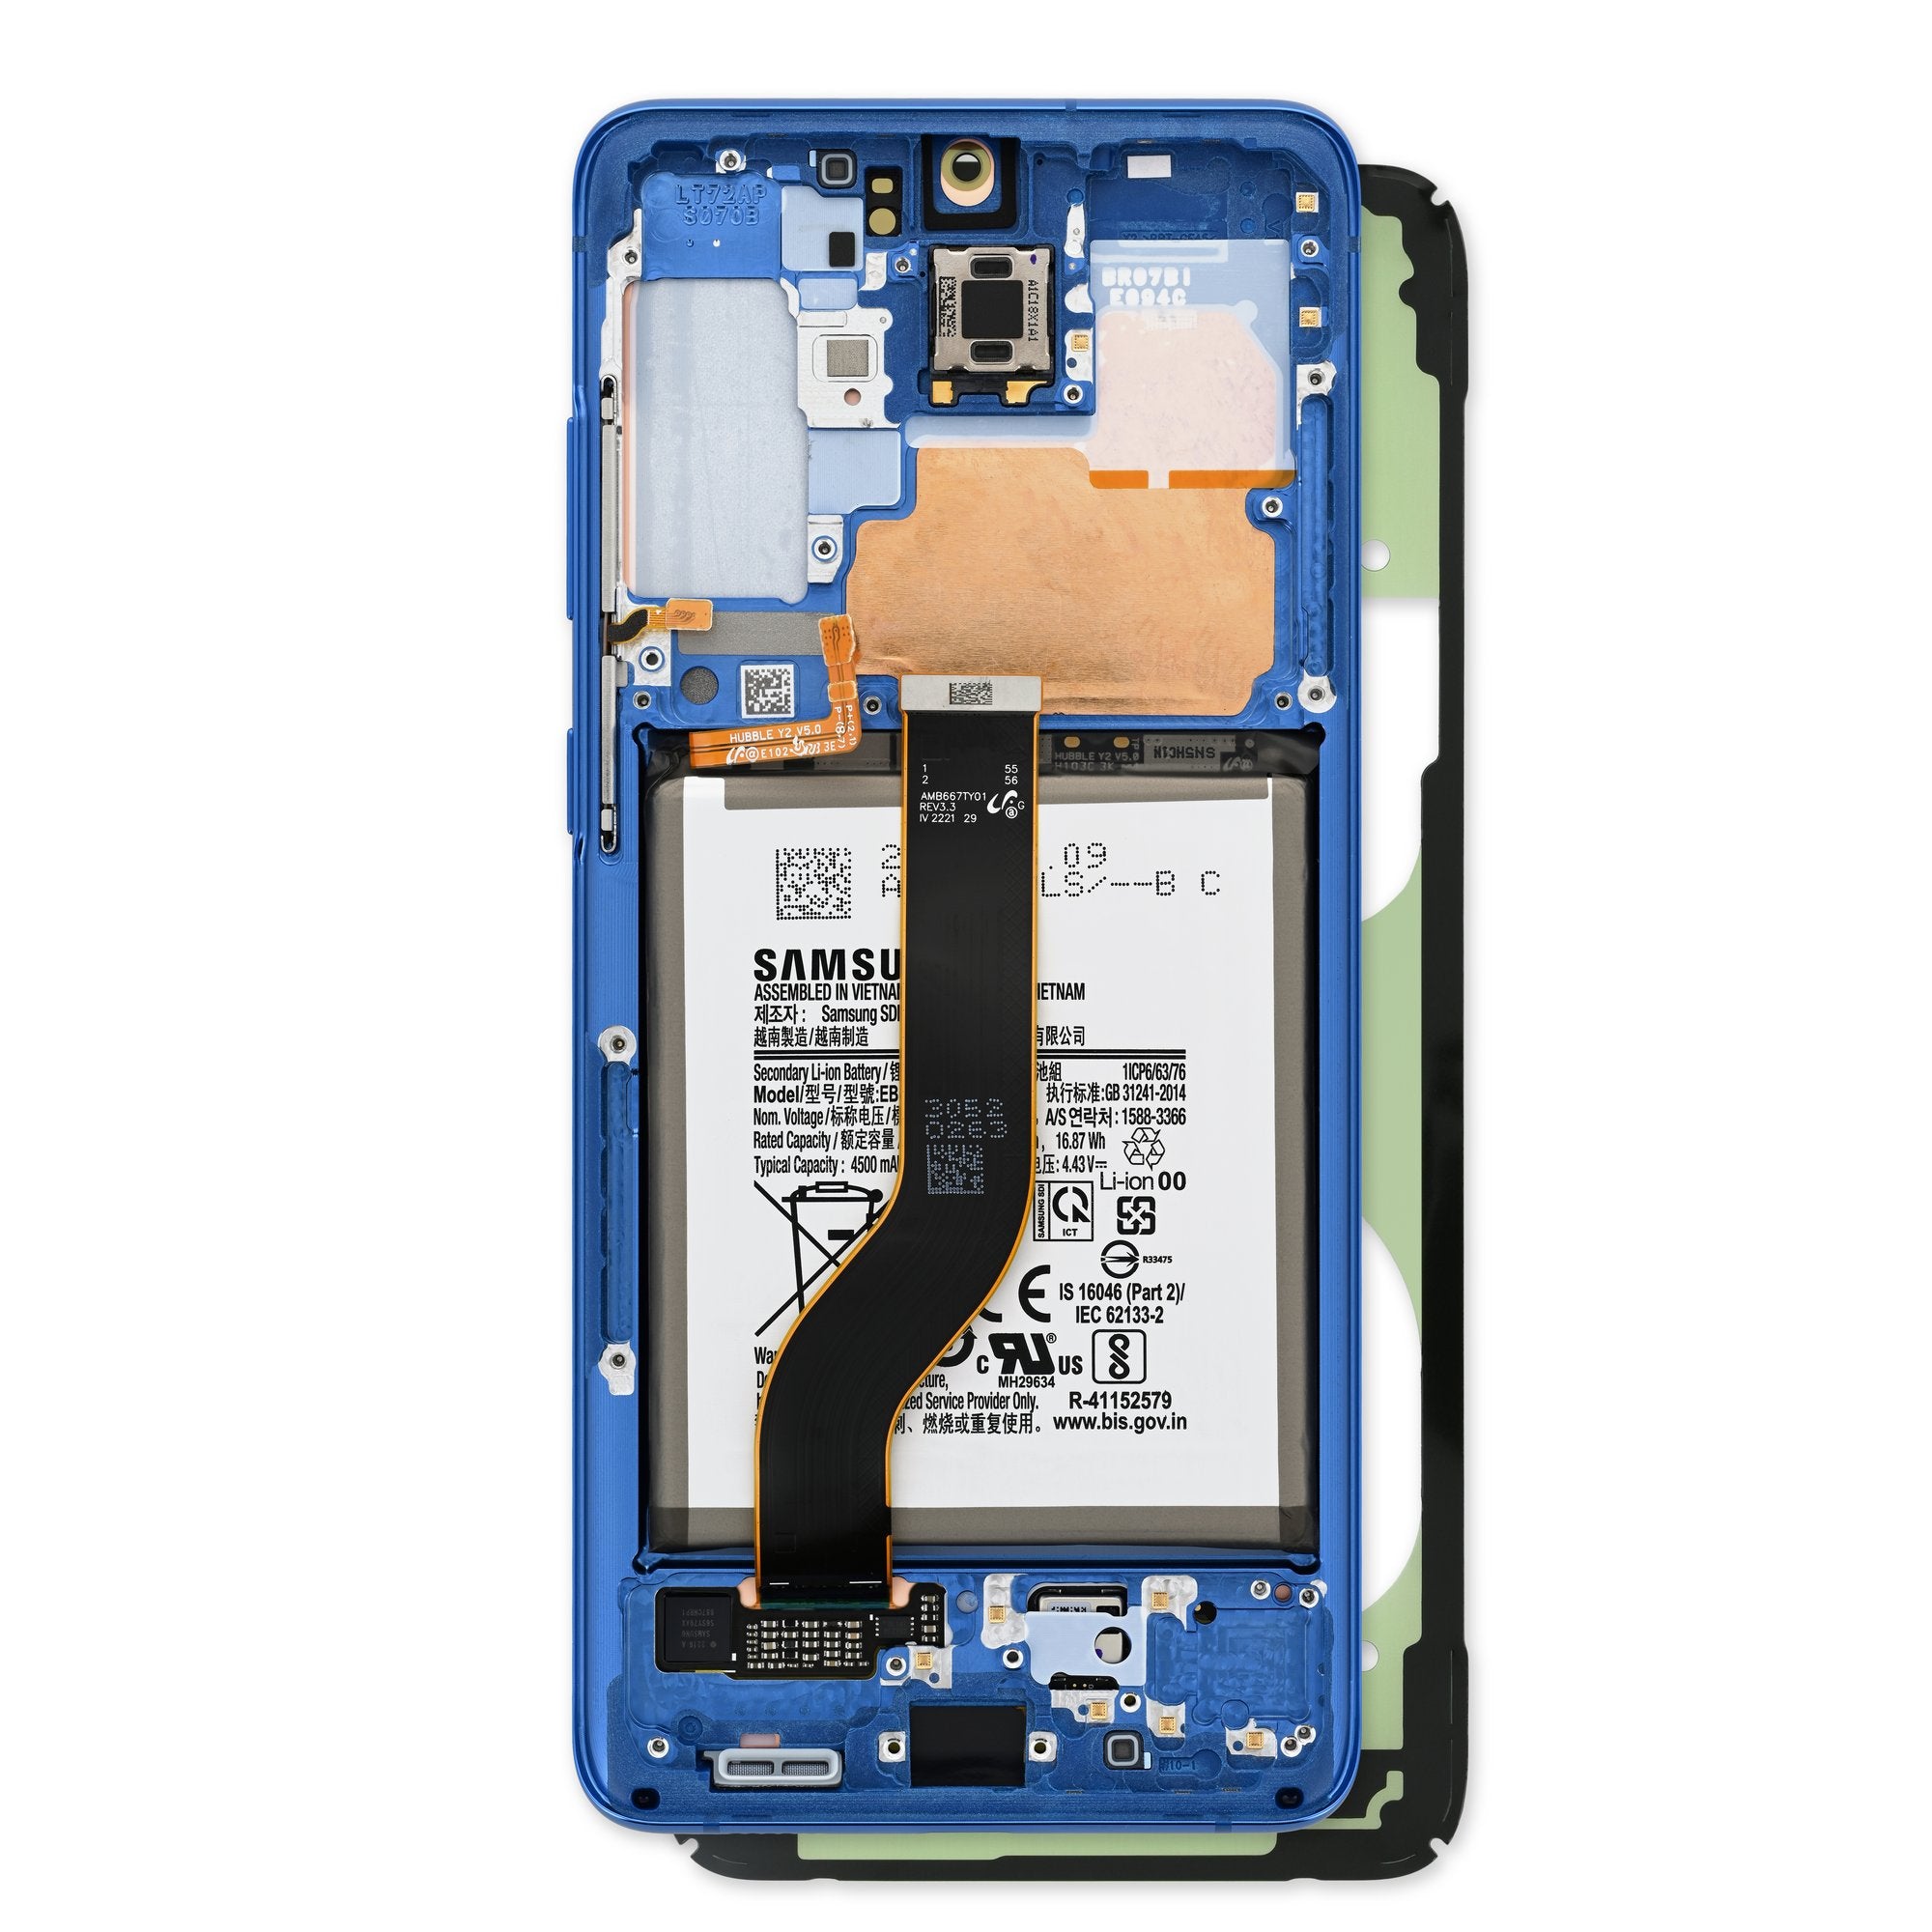 Với dịch vụ sửa chữa Galaxy S20 Plus và linh kiện chính hãng, bạn sẽ có thể đưa chiếc điện thoại của mình trở lại hoạt động một cách nhanh chóng và hiệu quả nhất! Hãy chiêm ngưỡng những hình ảnh chất lượng của dòng sản phẩm tại địa chỉ thích hợp!